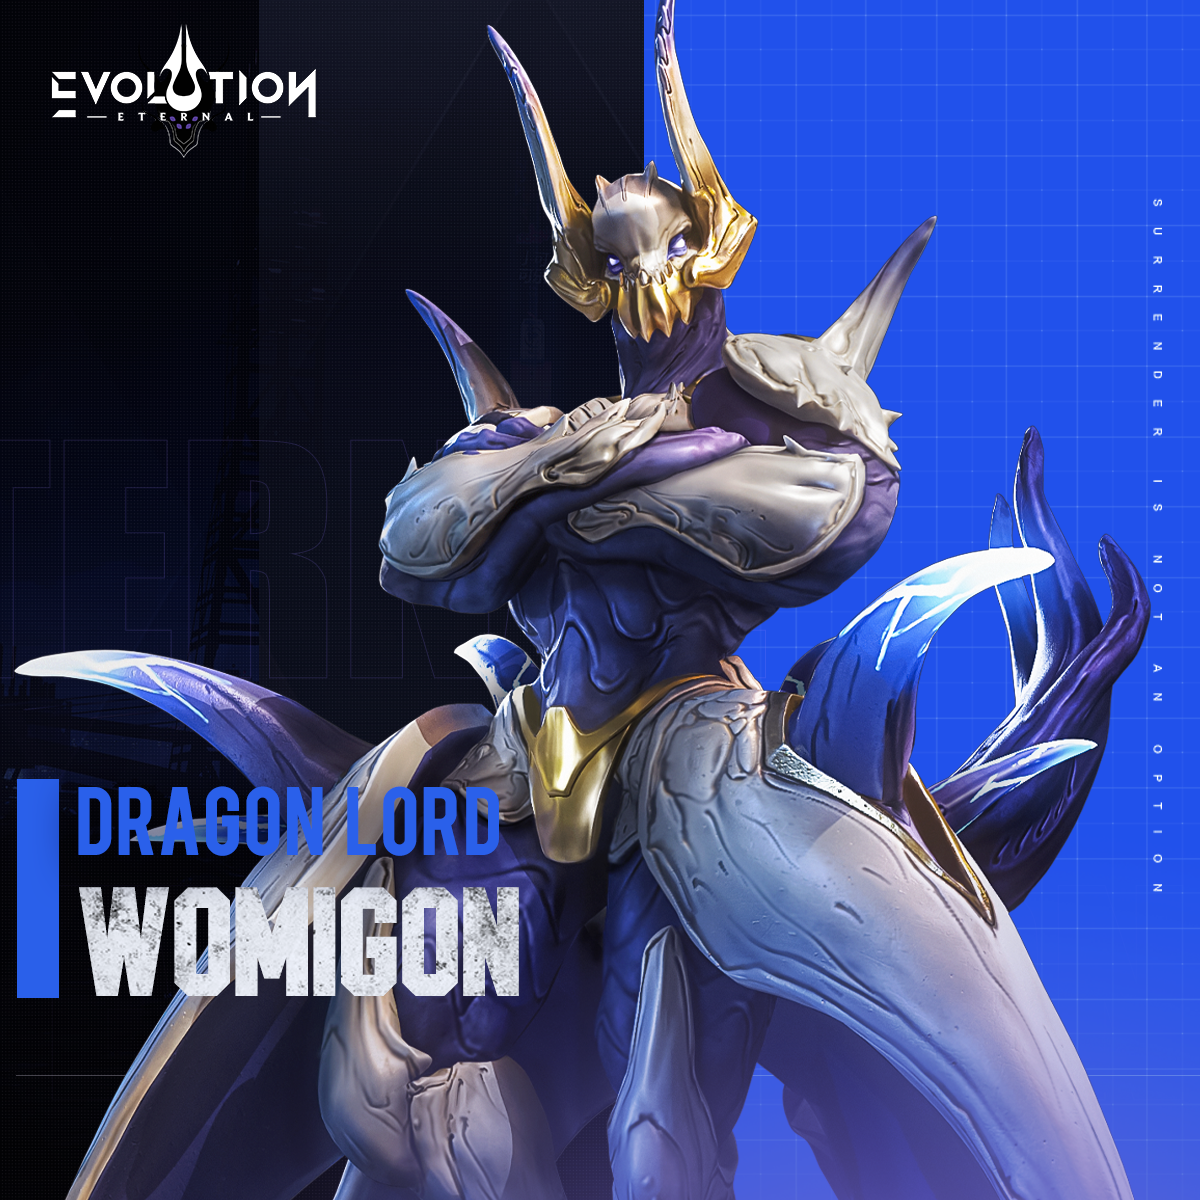 Dear Commanders, Meet Womigon, the Dragon Lord, in Eternal